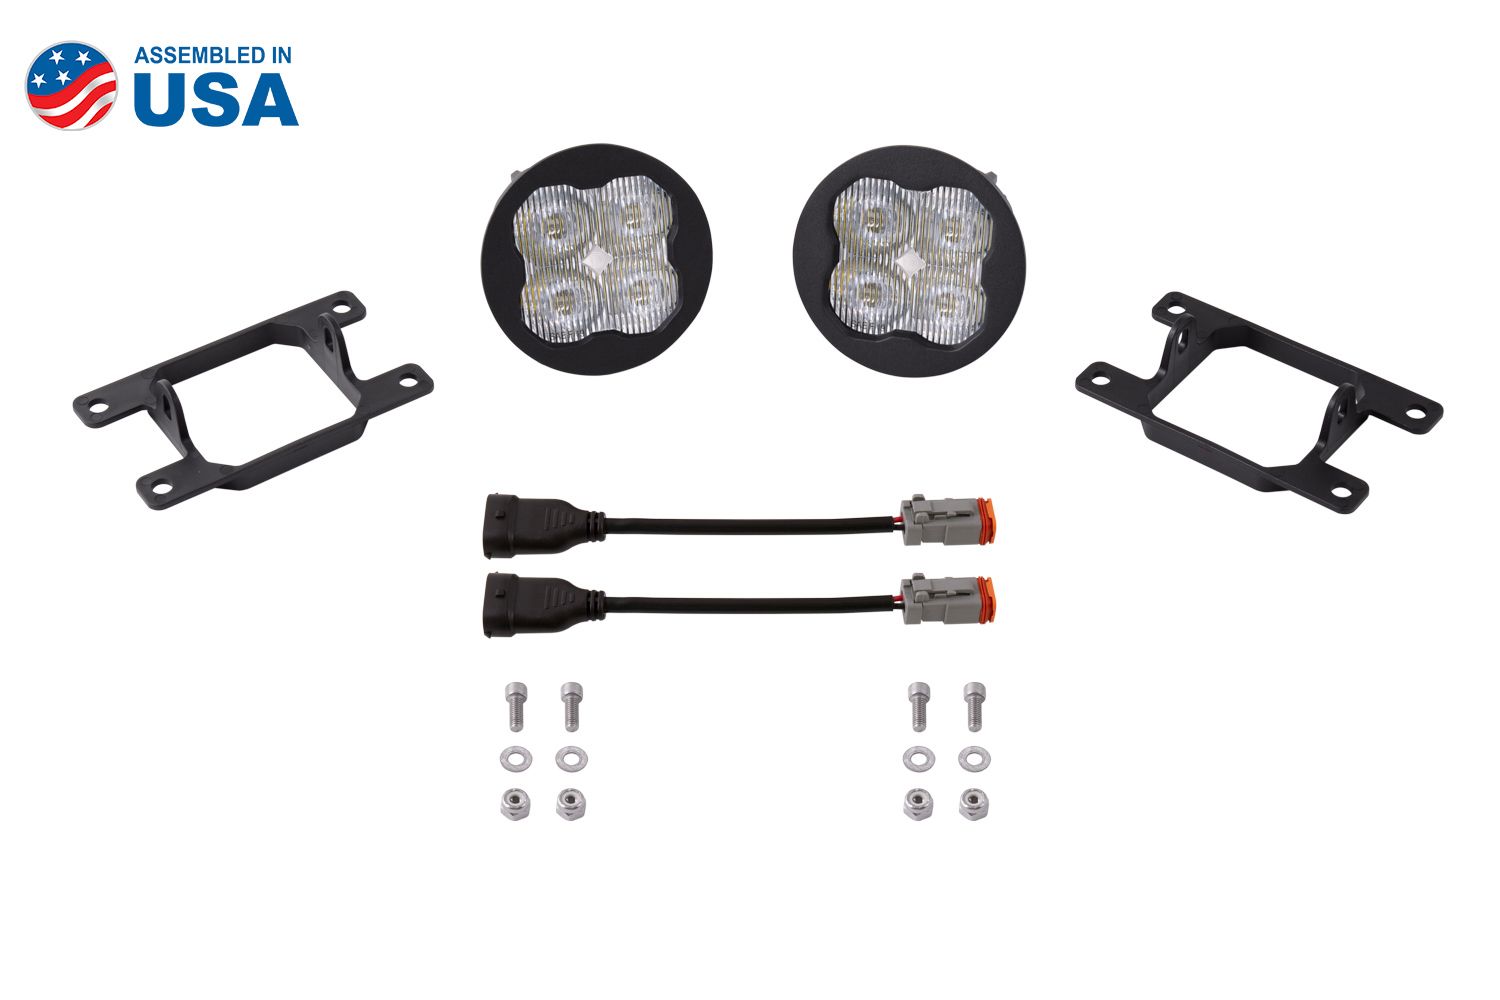 SS3 LED Fog Light Kit for 2007-2012 Nissan Sentra Diode Dynamics-